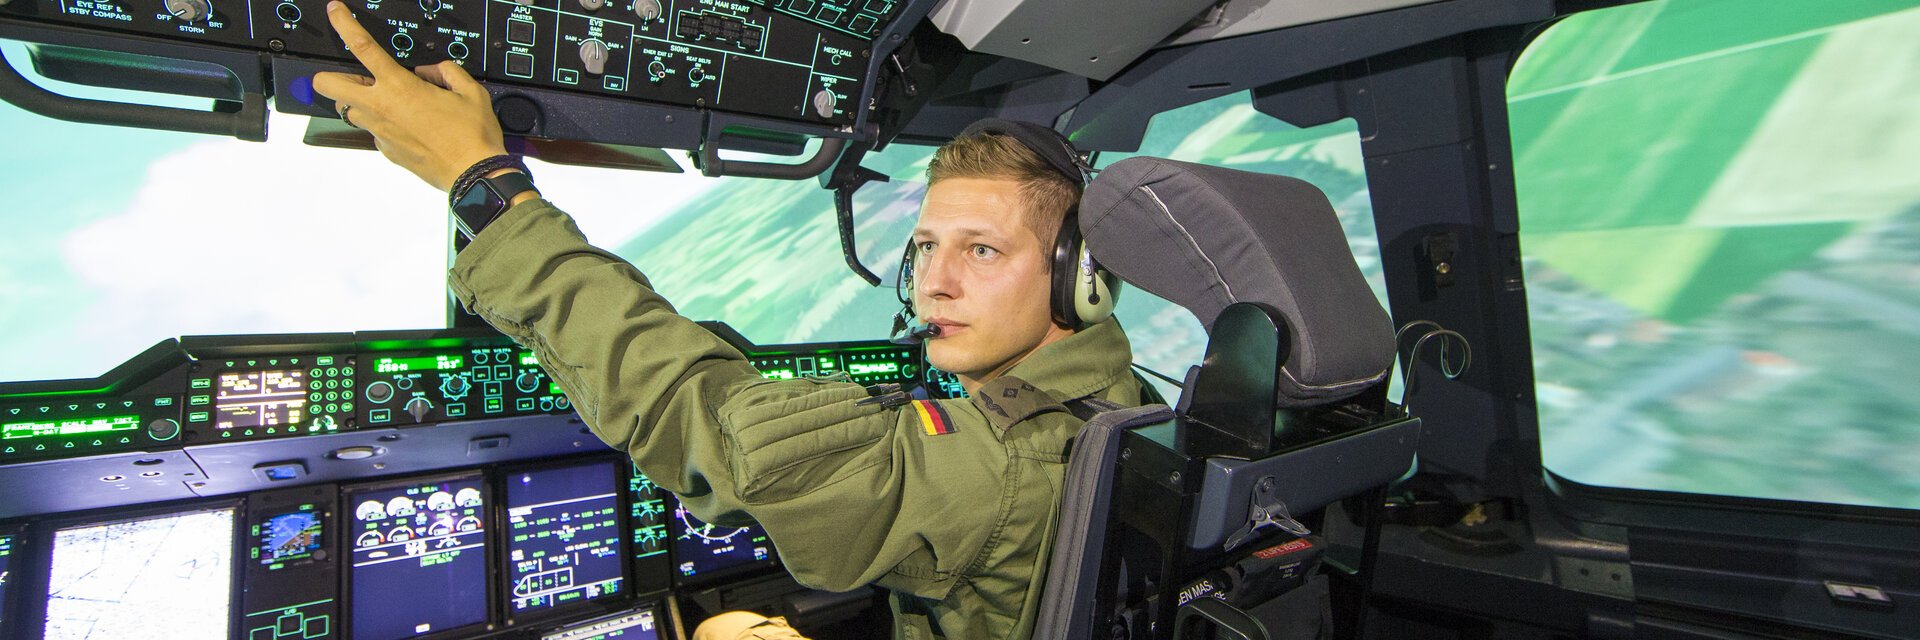 Mann im Cockpit